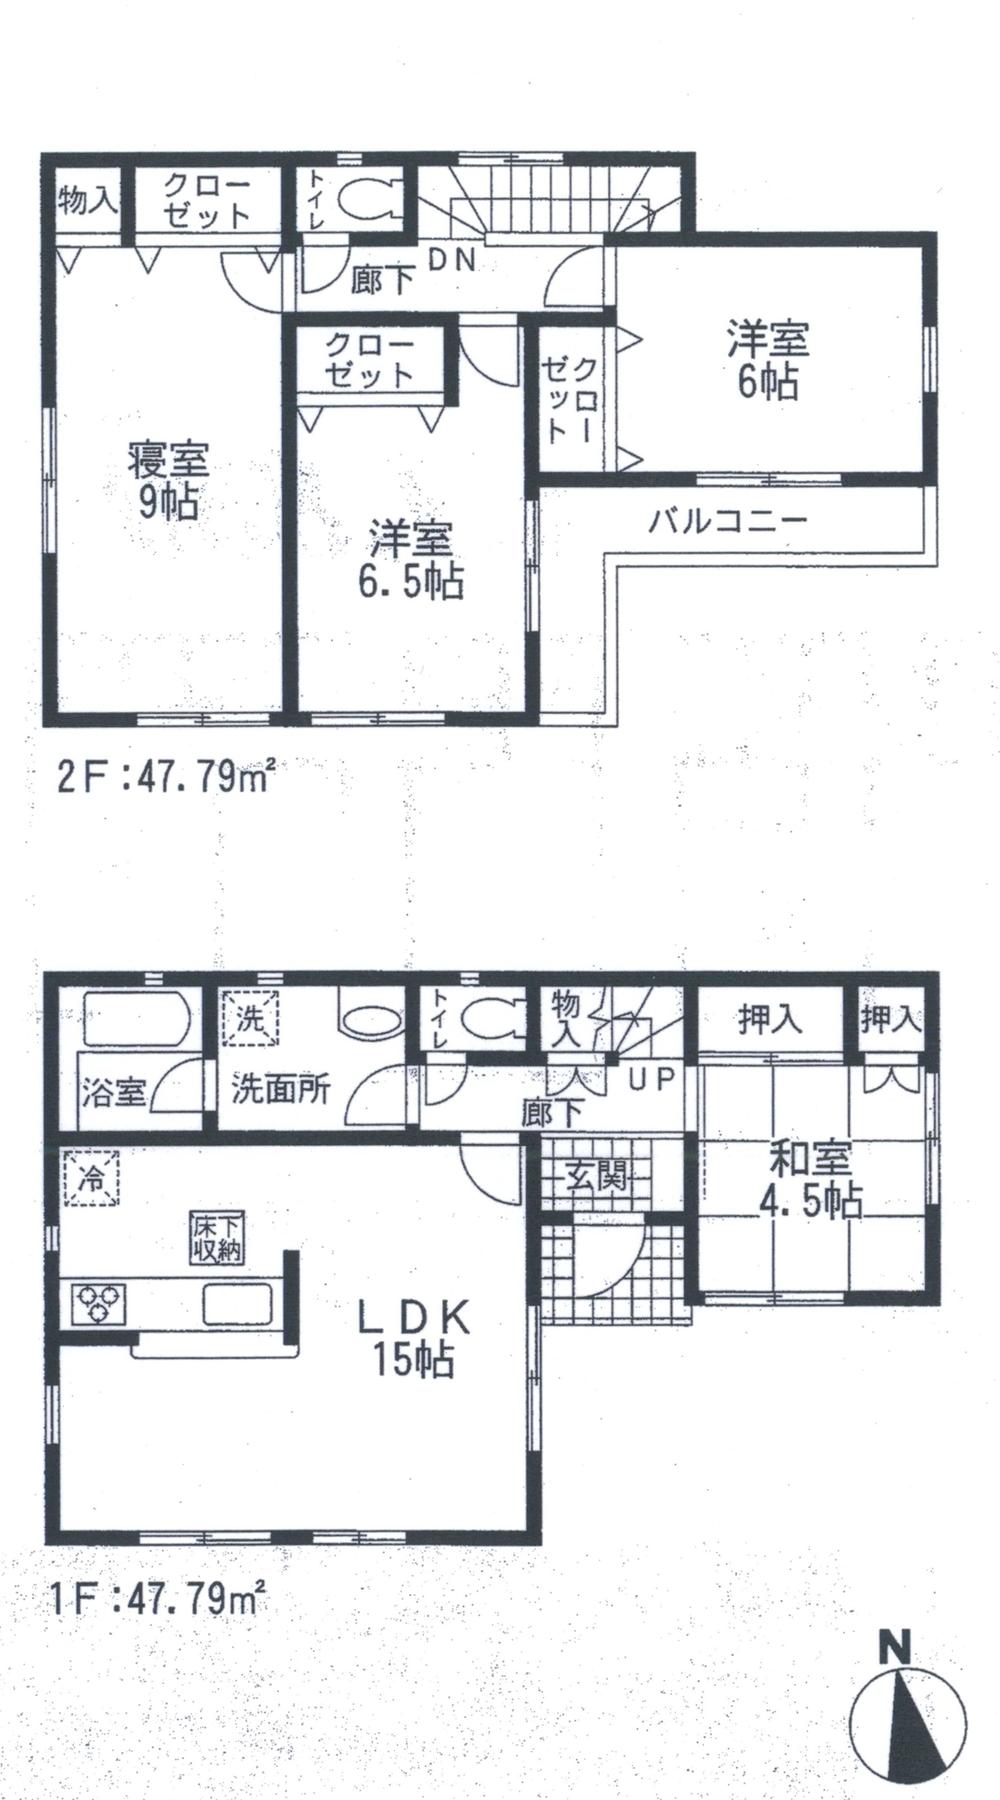 Floor plan. 20.8 million yen, 4LDK, Land area 111.23 sq m , Building area 95.58 sq m